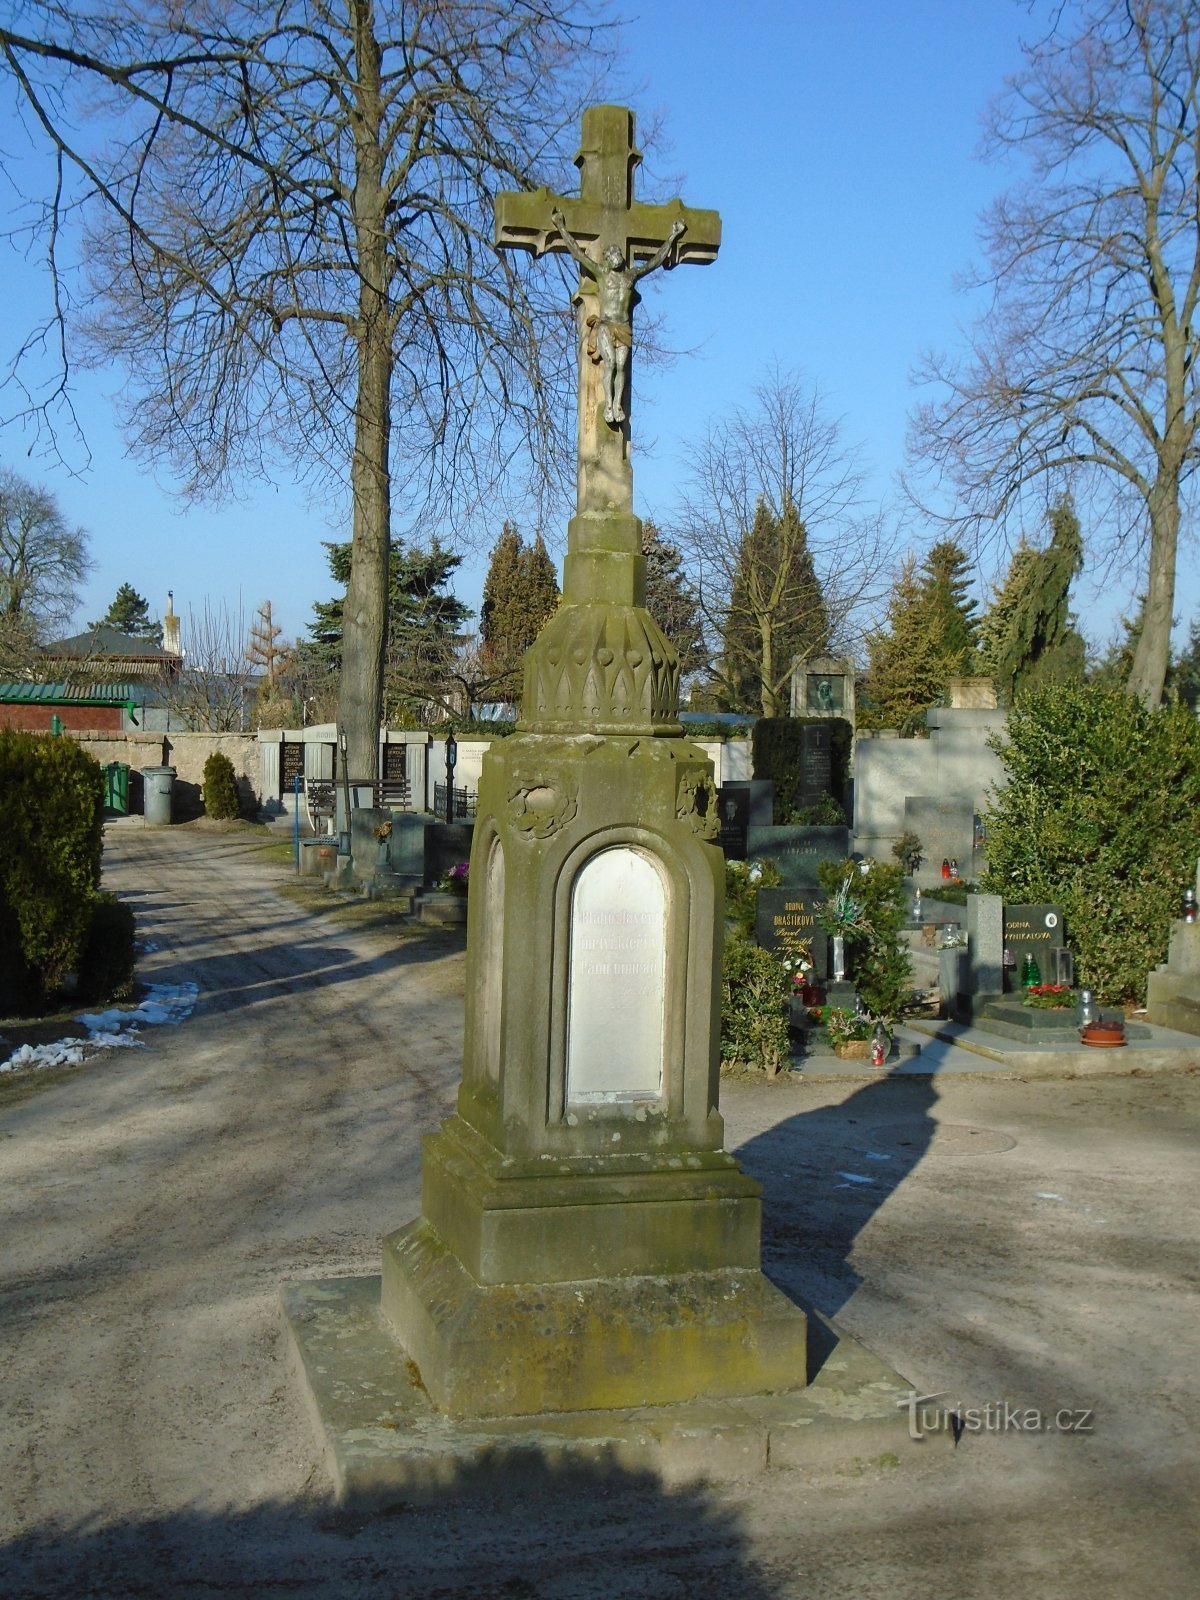 Pouchov 的墓地十字架 (Hradec Králové, 22.2.2018/XNUMX/XNUMX)